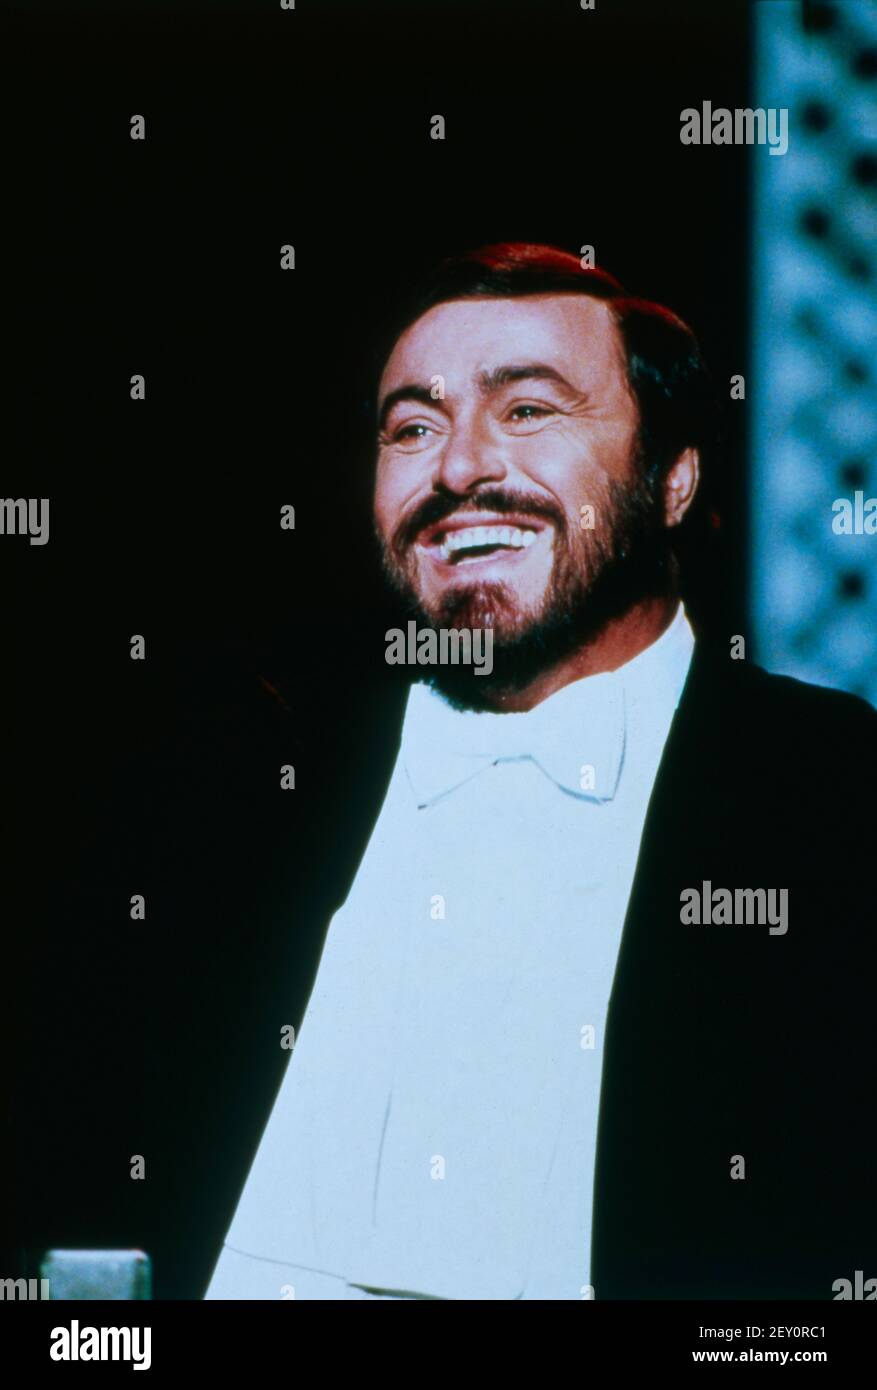 Luciano Pavarotti, italienischer Opernsänger und einer der größten Tenöre des 20. Jahrhundert, Porträt, 1990. Luciano Pavarotti, italienischer Opernsänger und einer der größten Tenöre des 20th. Jahrhunderts, Portrait, 1990 Stockfoto